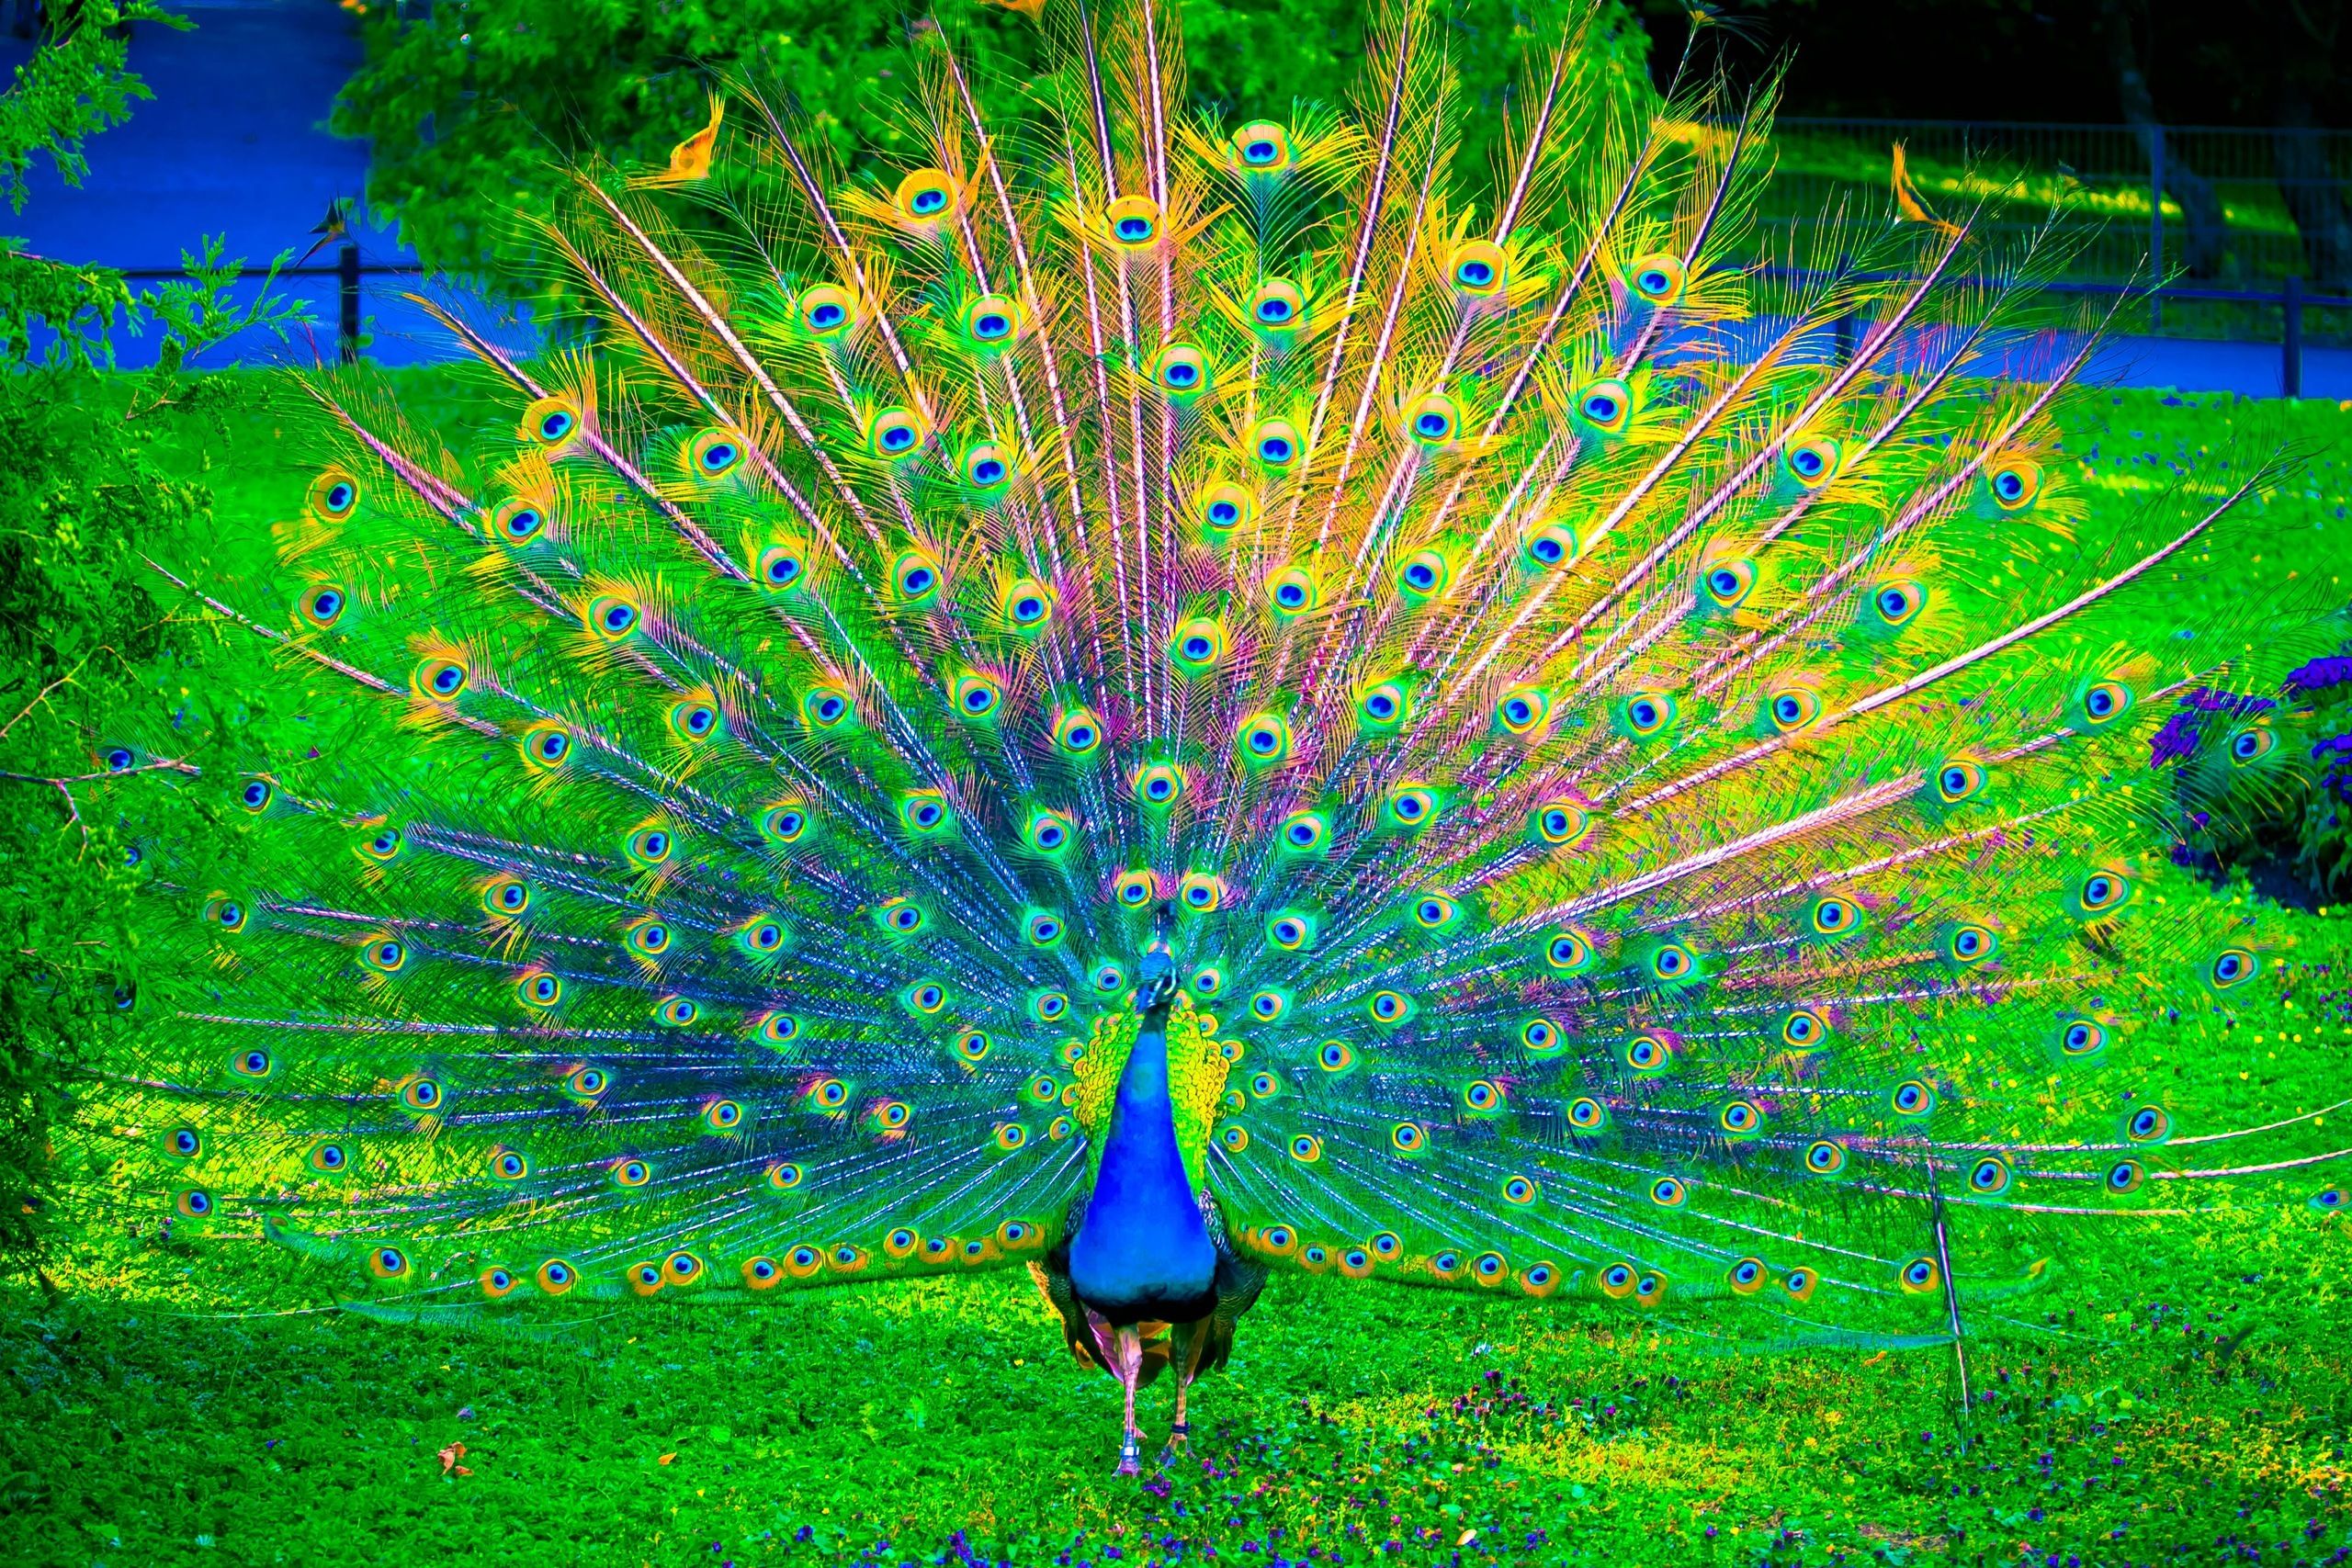 peacock photos download